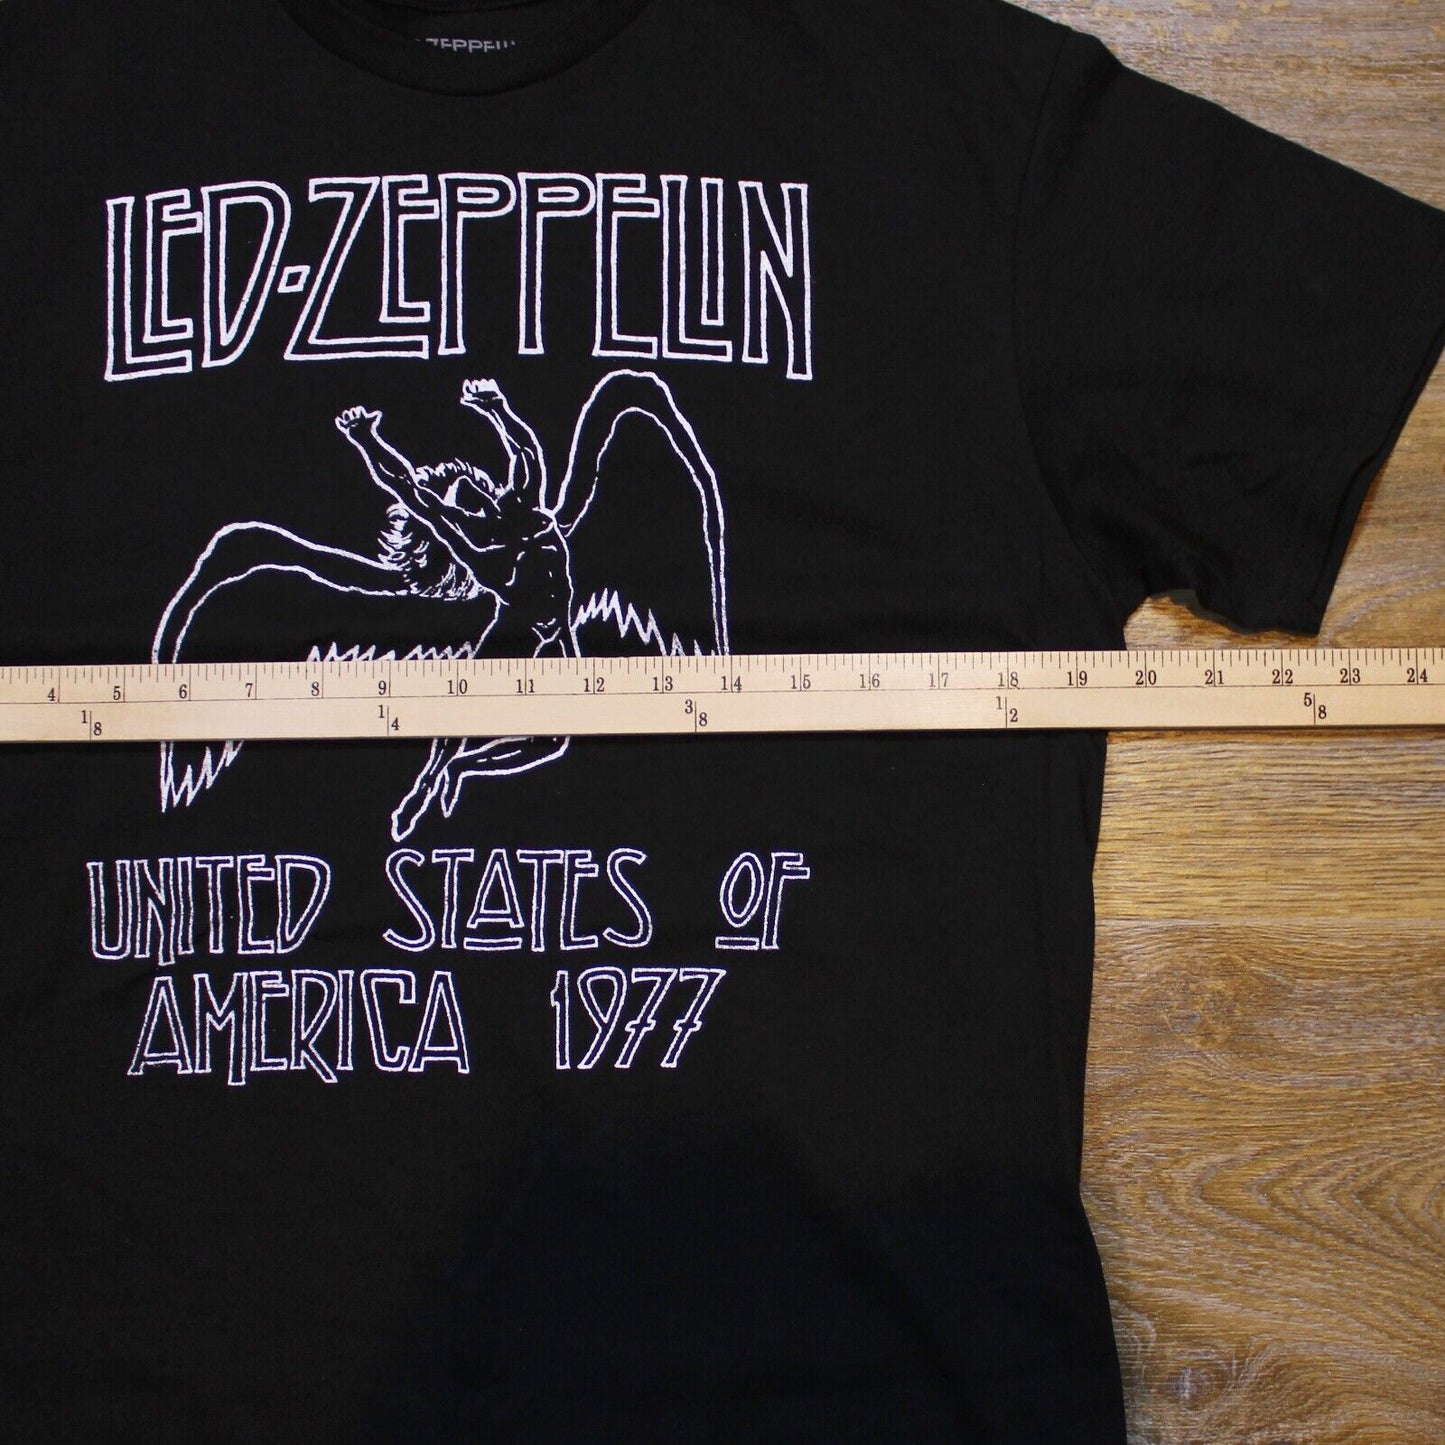 Led Zeppelin United State of America 1977 Reprint T-Shirt - Men's Size Medium